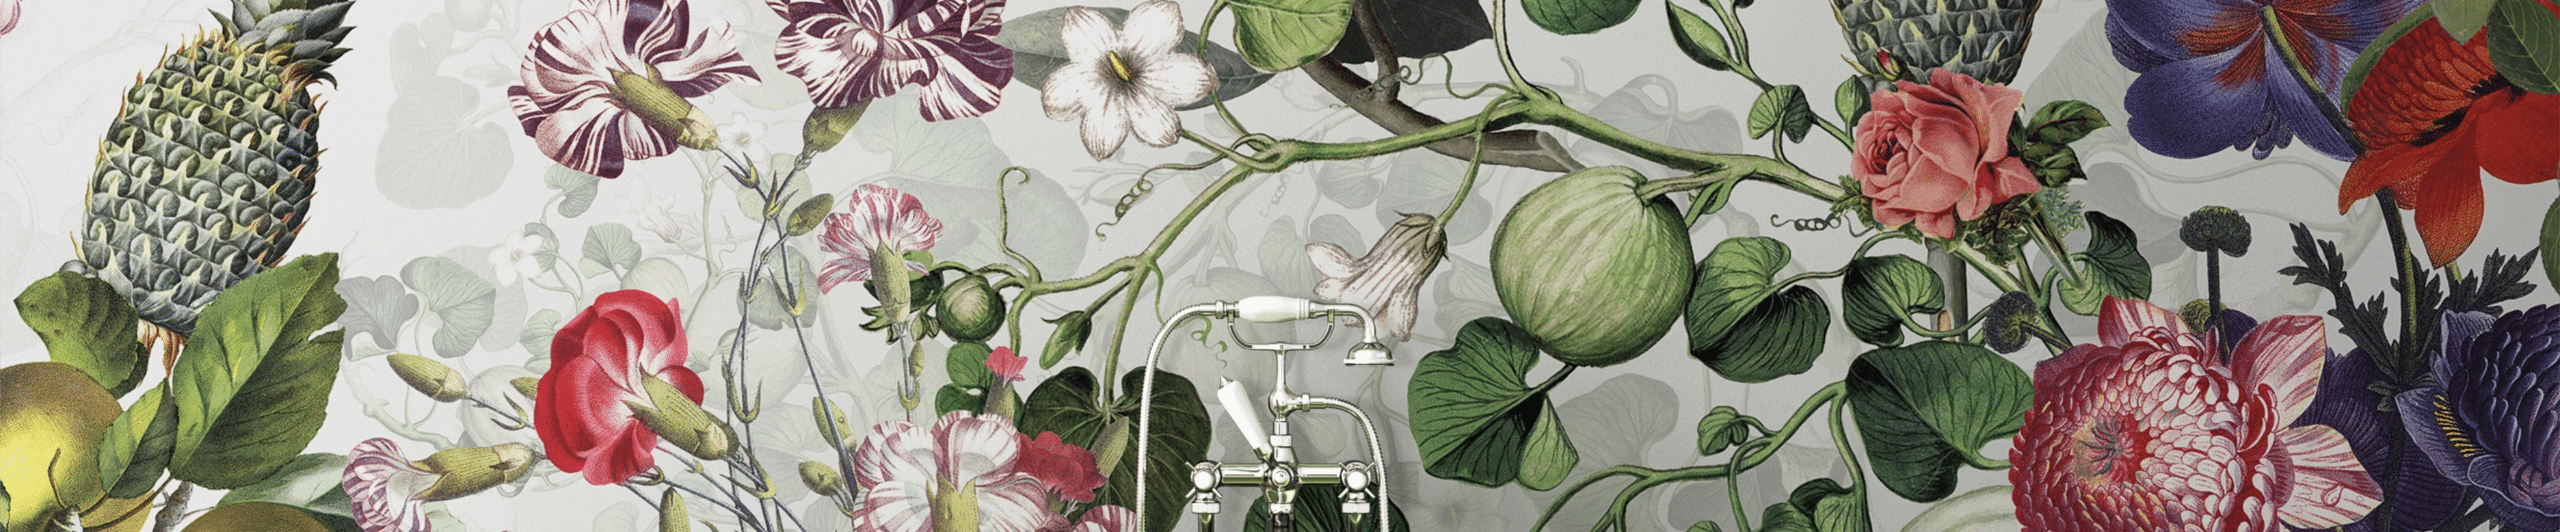 Hollywood Bathtub Botanica Grey Wallpaper